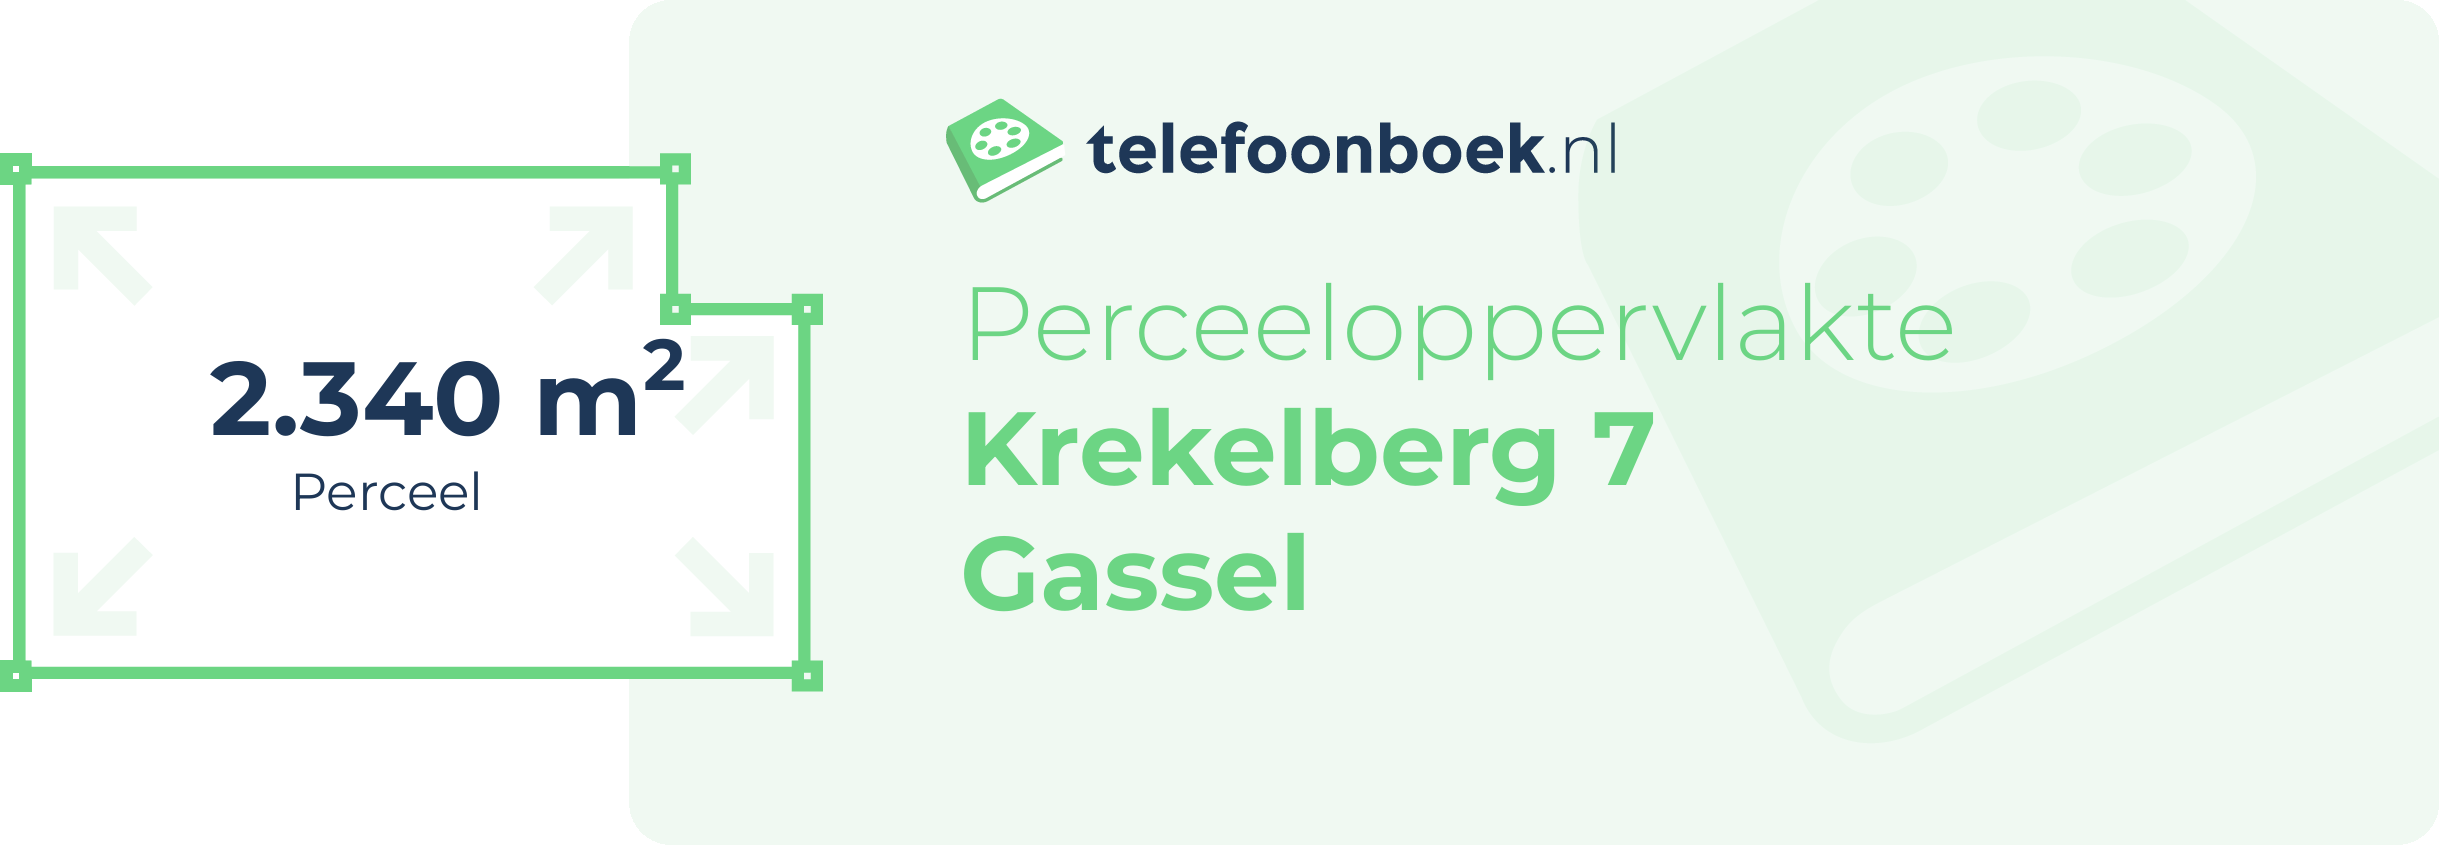 Perceeloppervlakte Krekelberg 7 Gassel